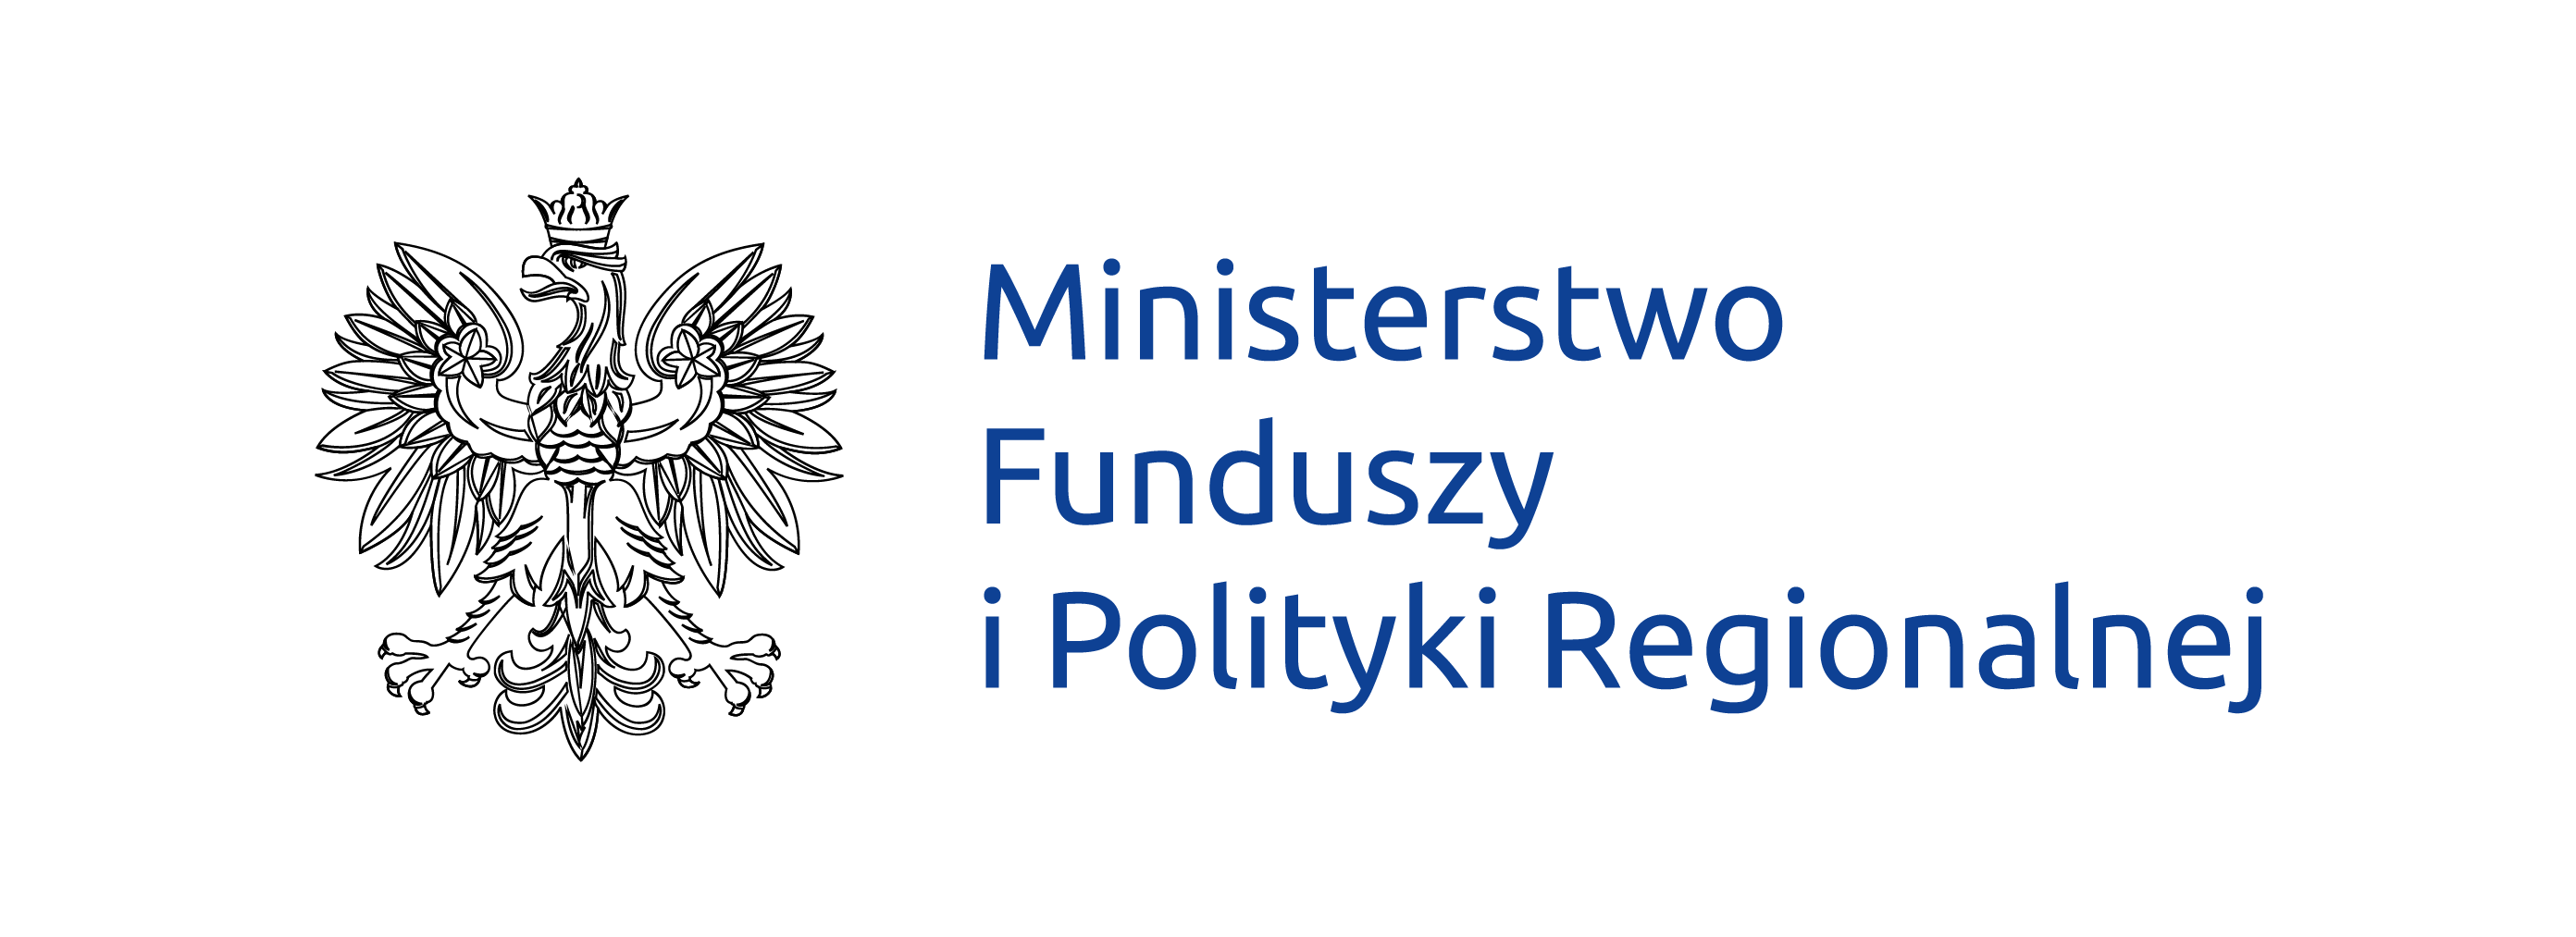 Logo des Ministeriums für europäische Fonds und Regionalpolitik